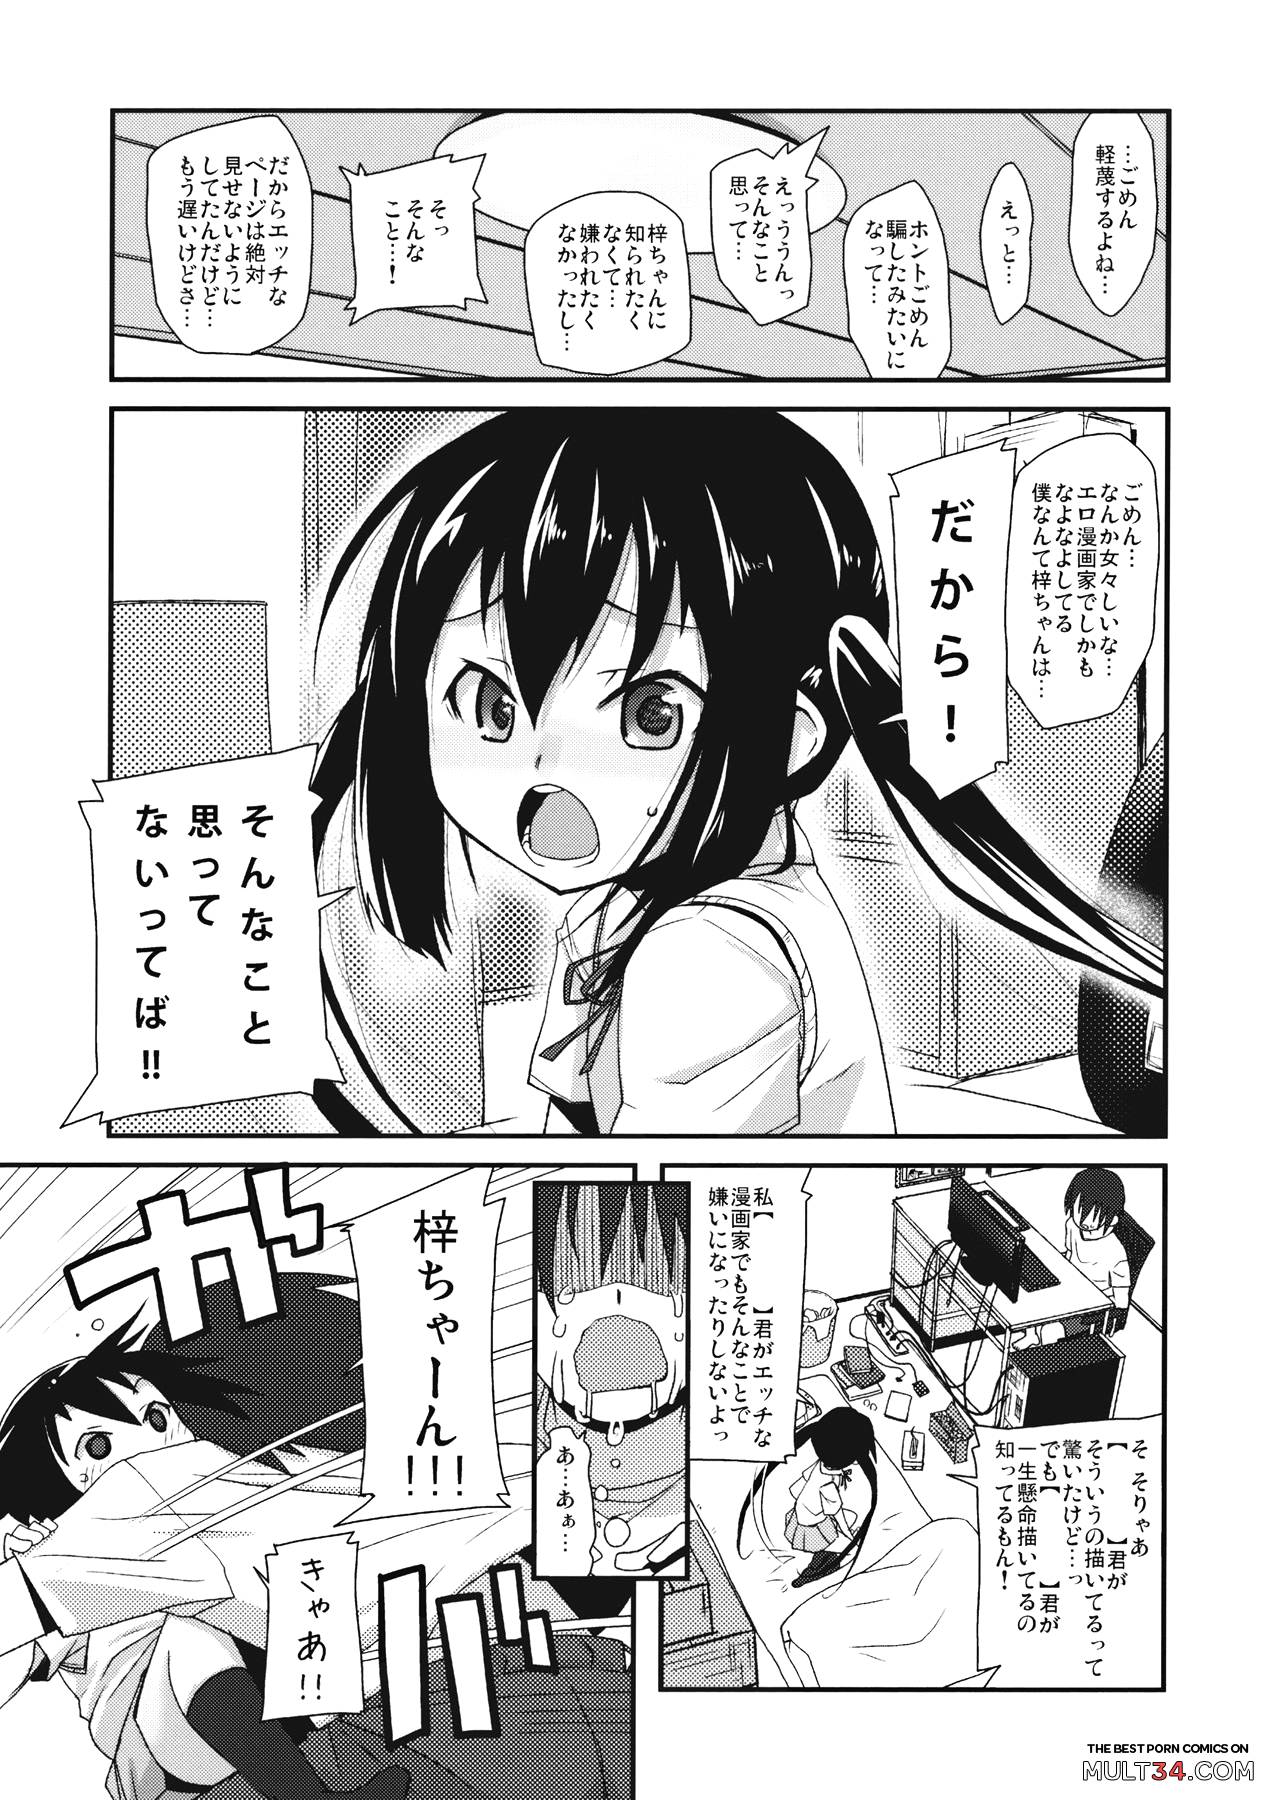 Moshikano!! page 5